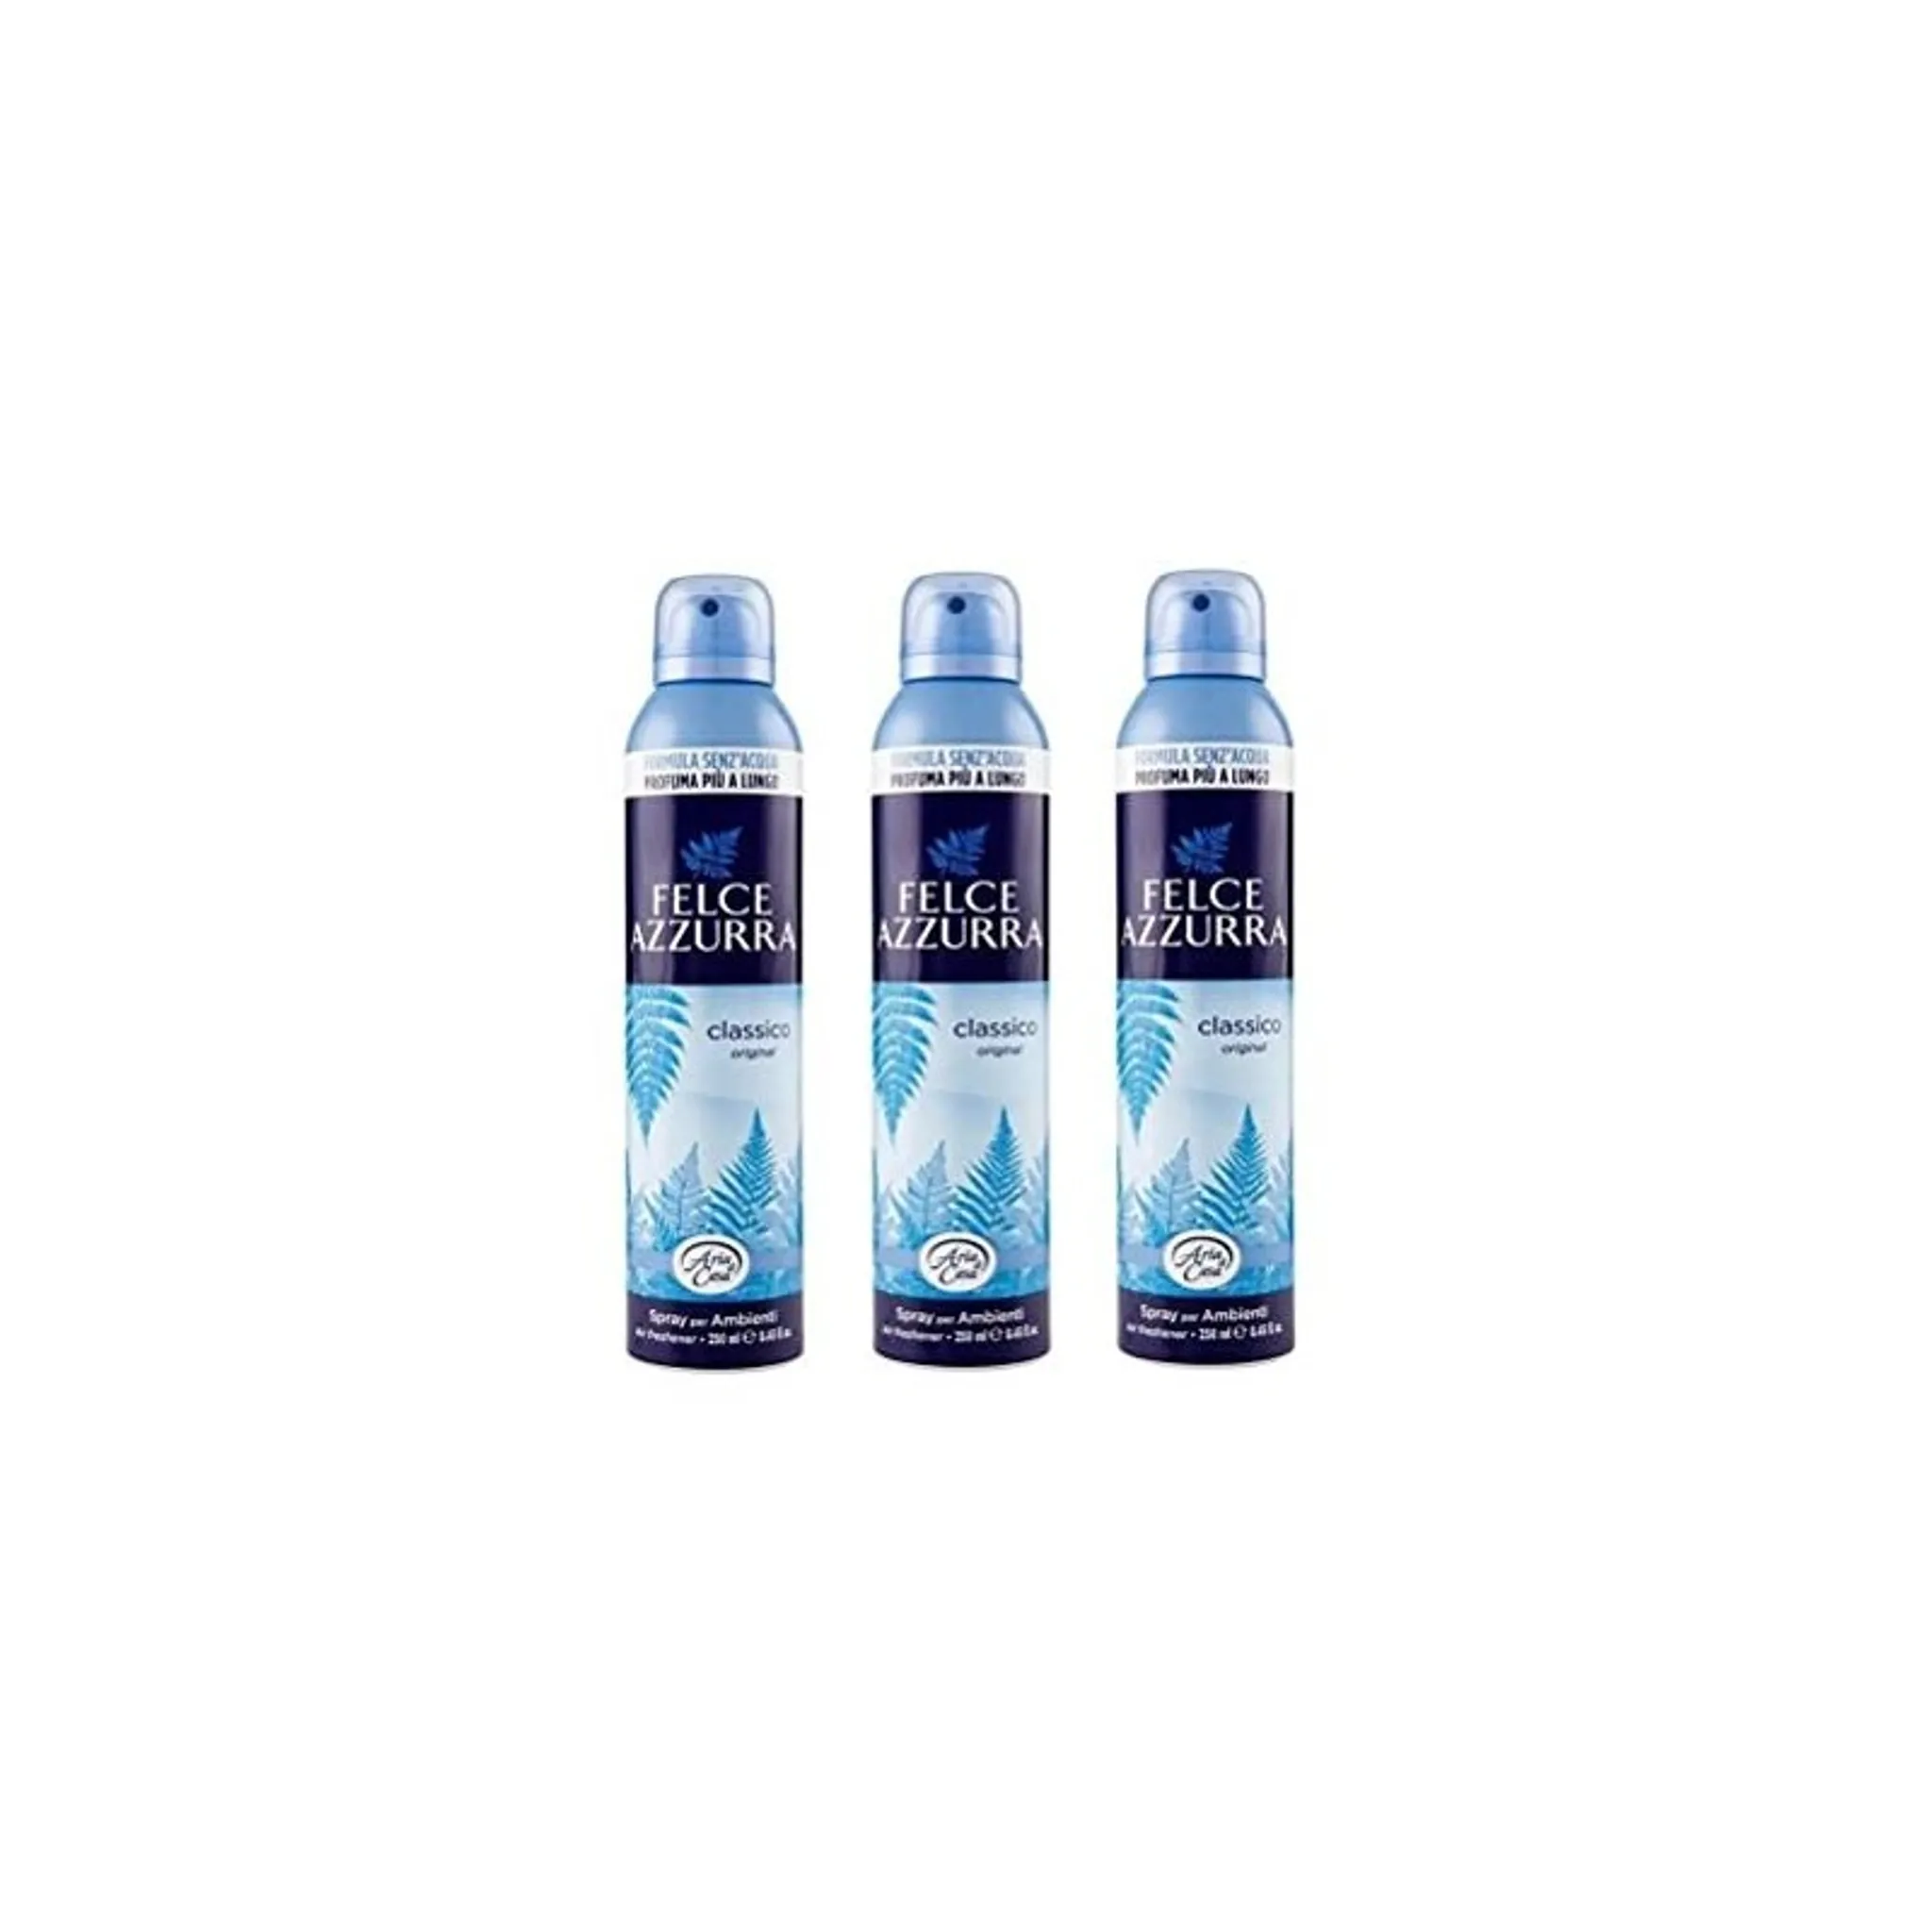 2 Paradise Platinum Lufterfrischer Spray Geruch Beseitigung Duft Blau Lava  